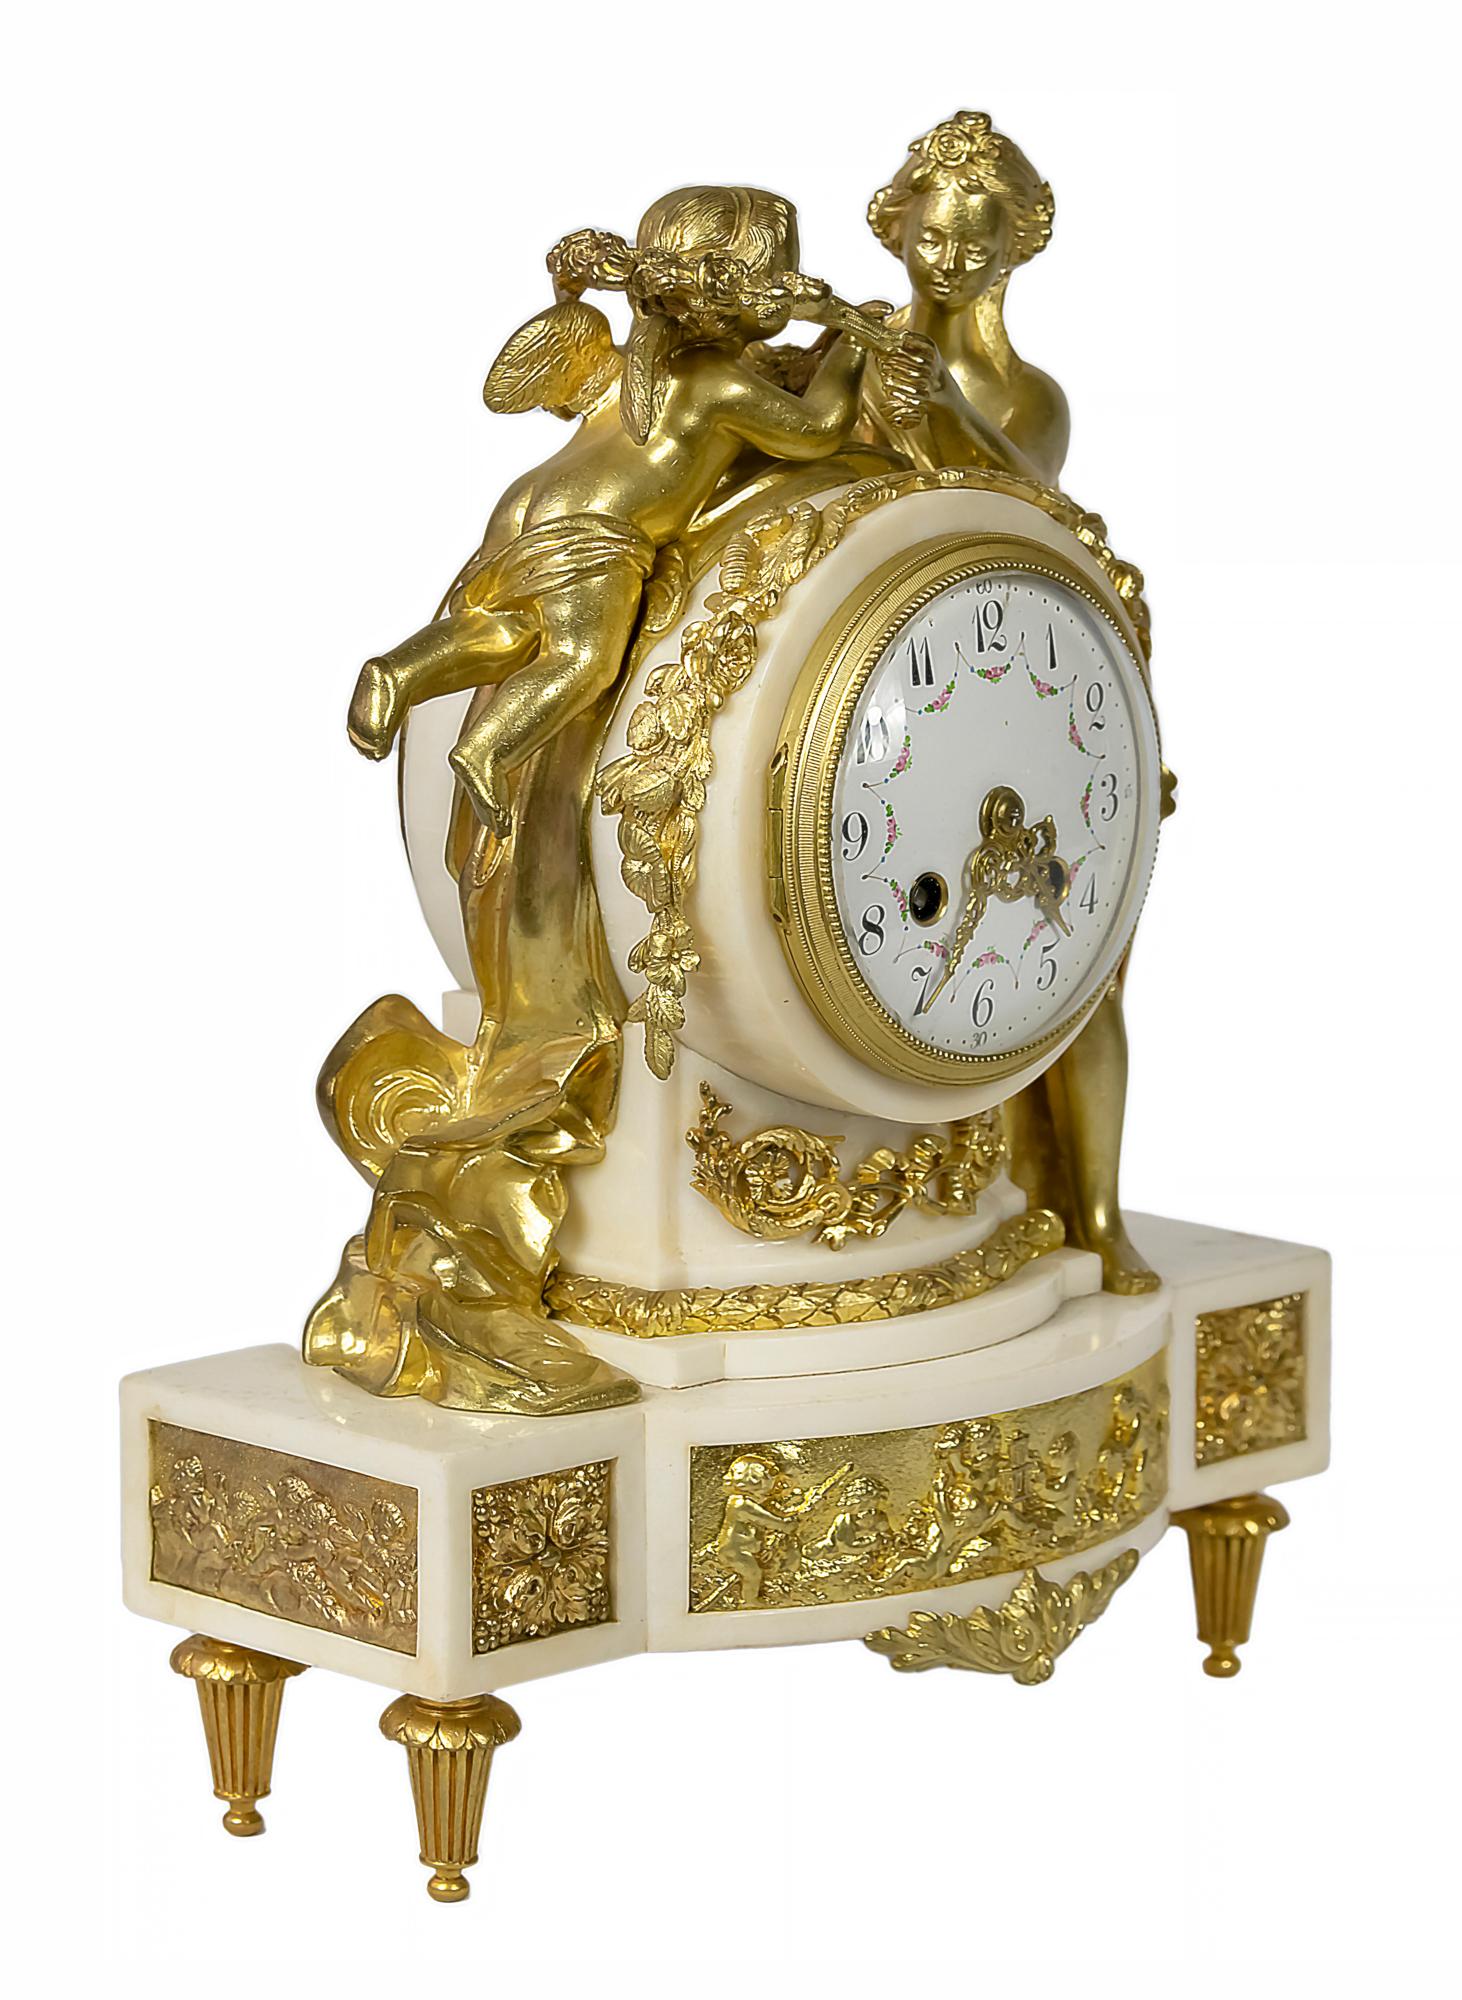 Antike französische Kaminsimsuhr im Stil Louis XVI des 19. Jahrhunderts aus vergoldeter Bronze und weißem Marmor.
Das runde Gehäuse ist mit floralen Elementen verziert und wird von den Figuren der Venus und des Amors gekrönt.
Das Zifferblatt